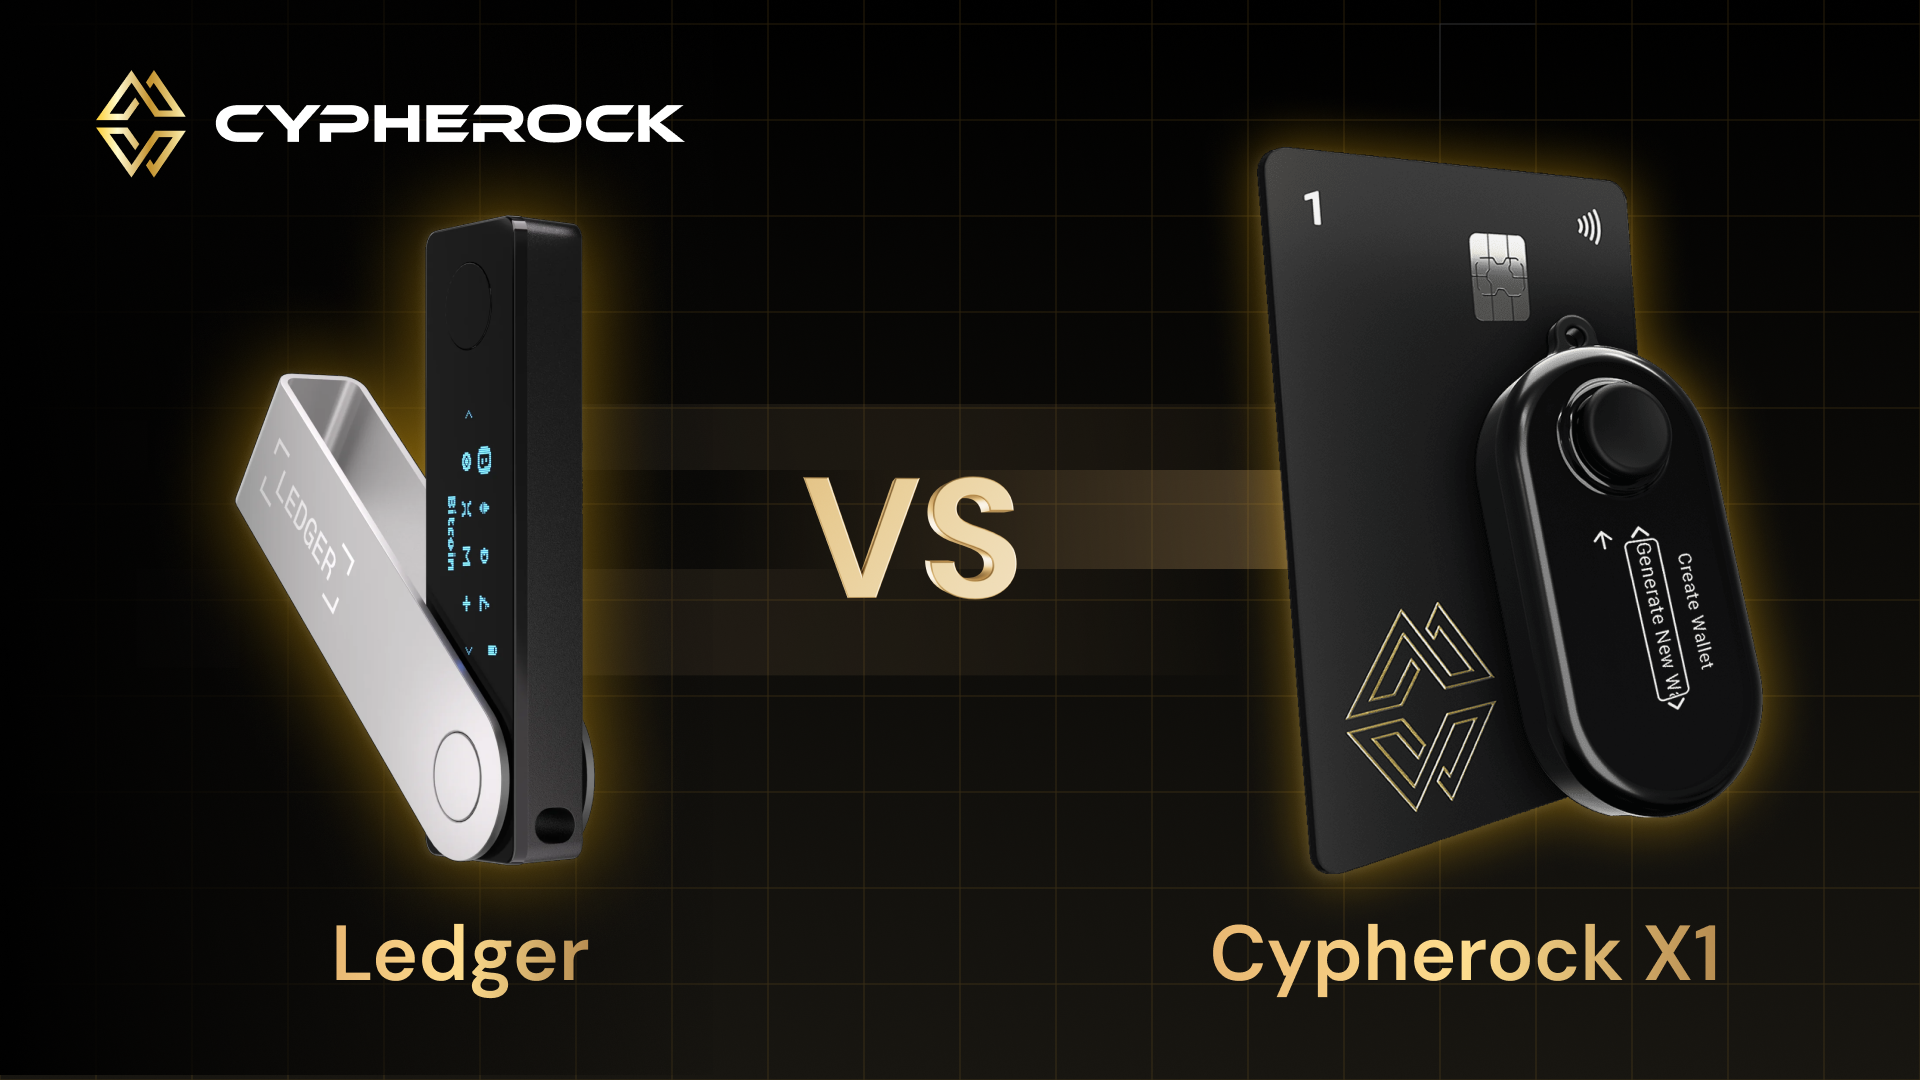 Ledger vs Cypherock X1